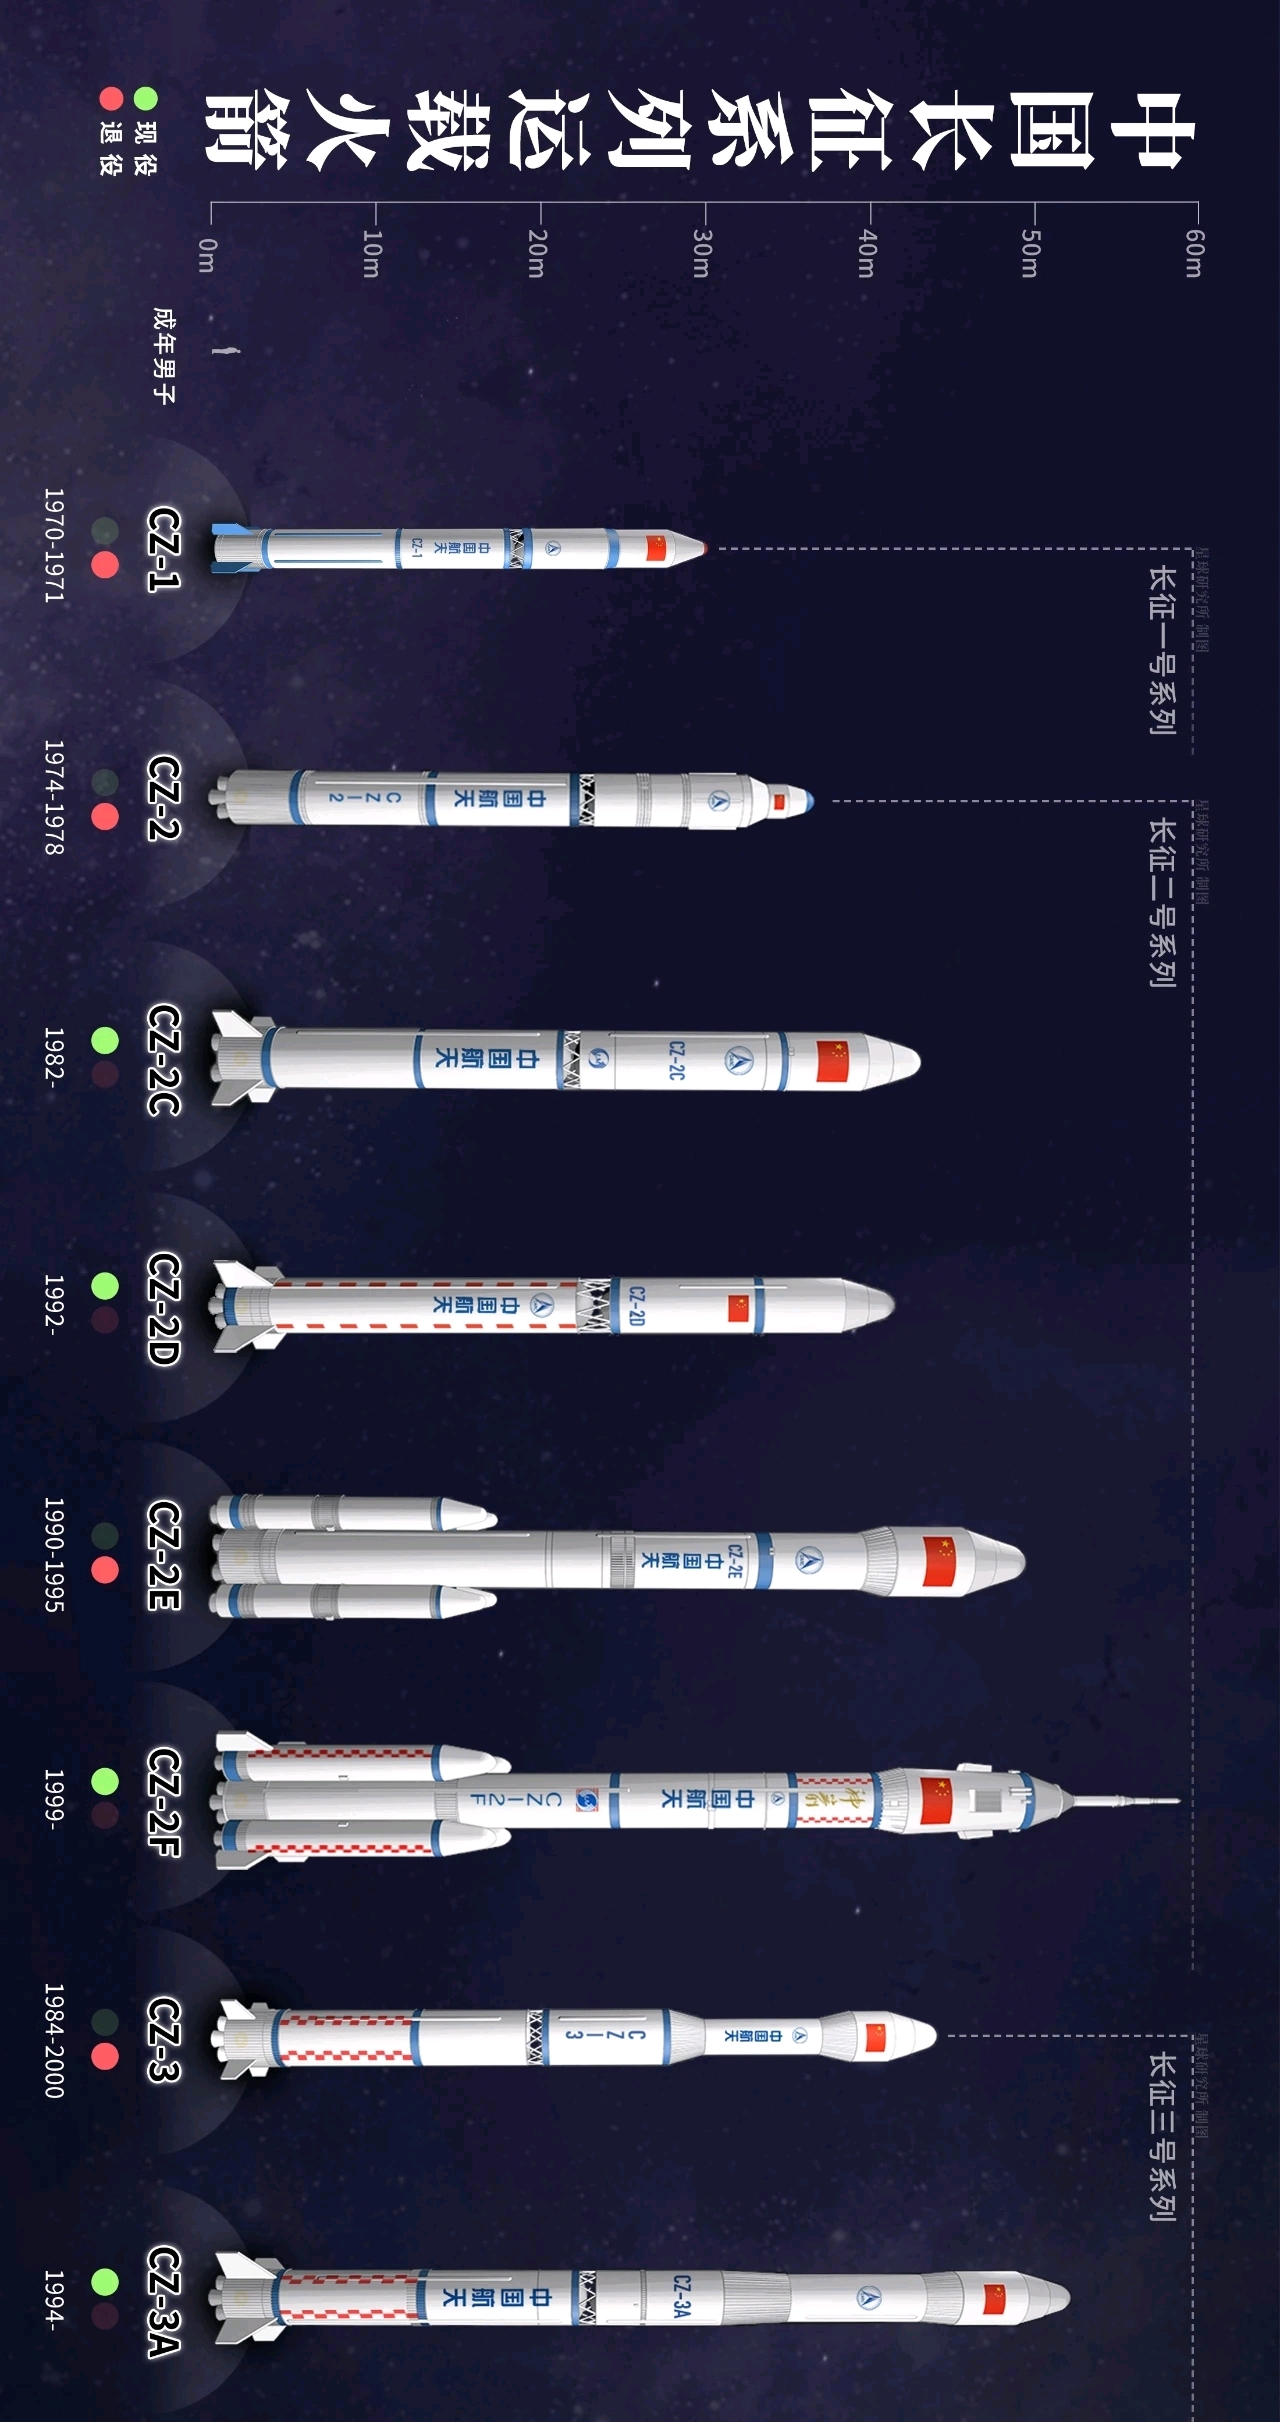 中国运载火箭系列高清图集